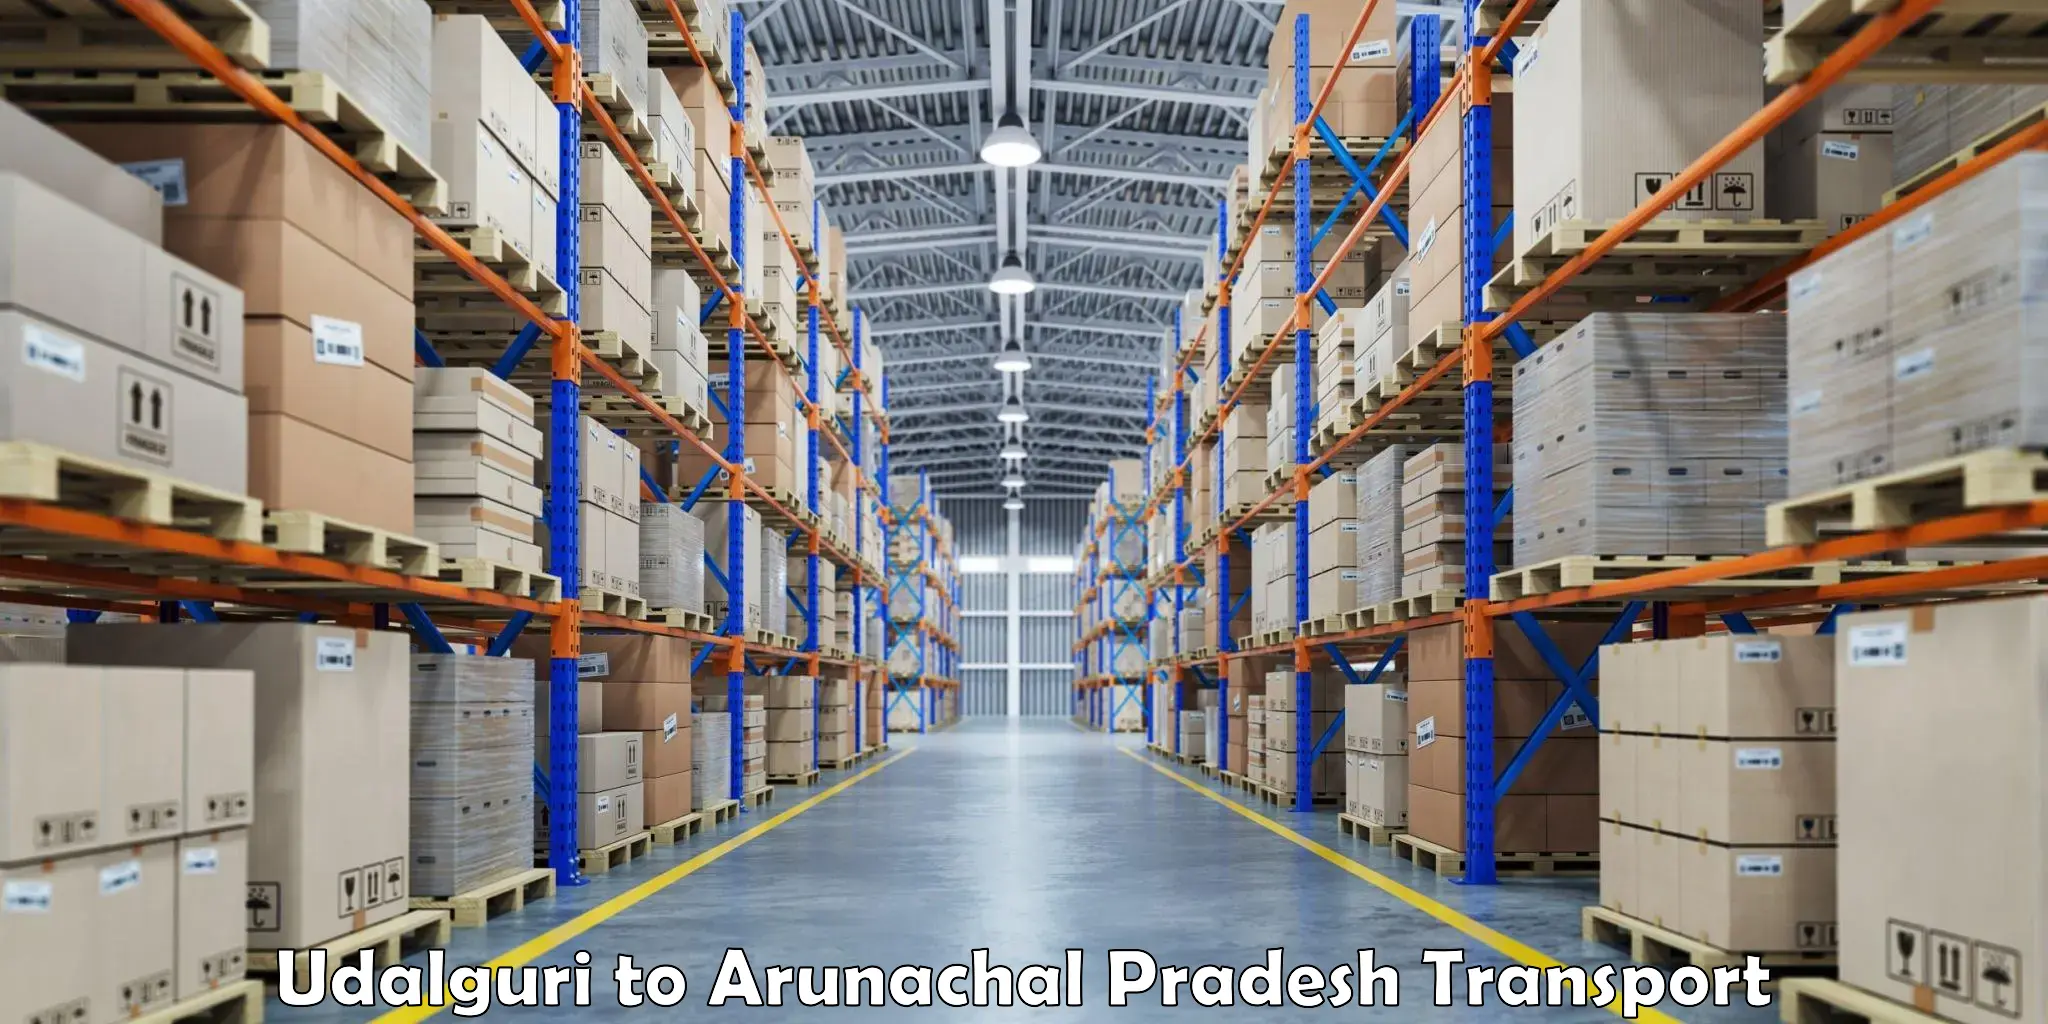 Truck transport companies in India Udalguri to Itanagar